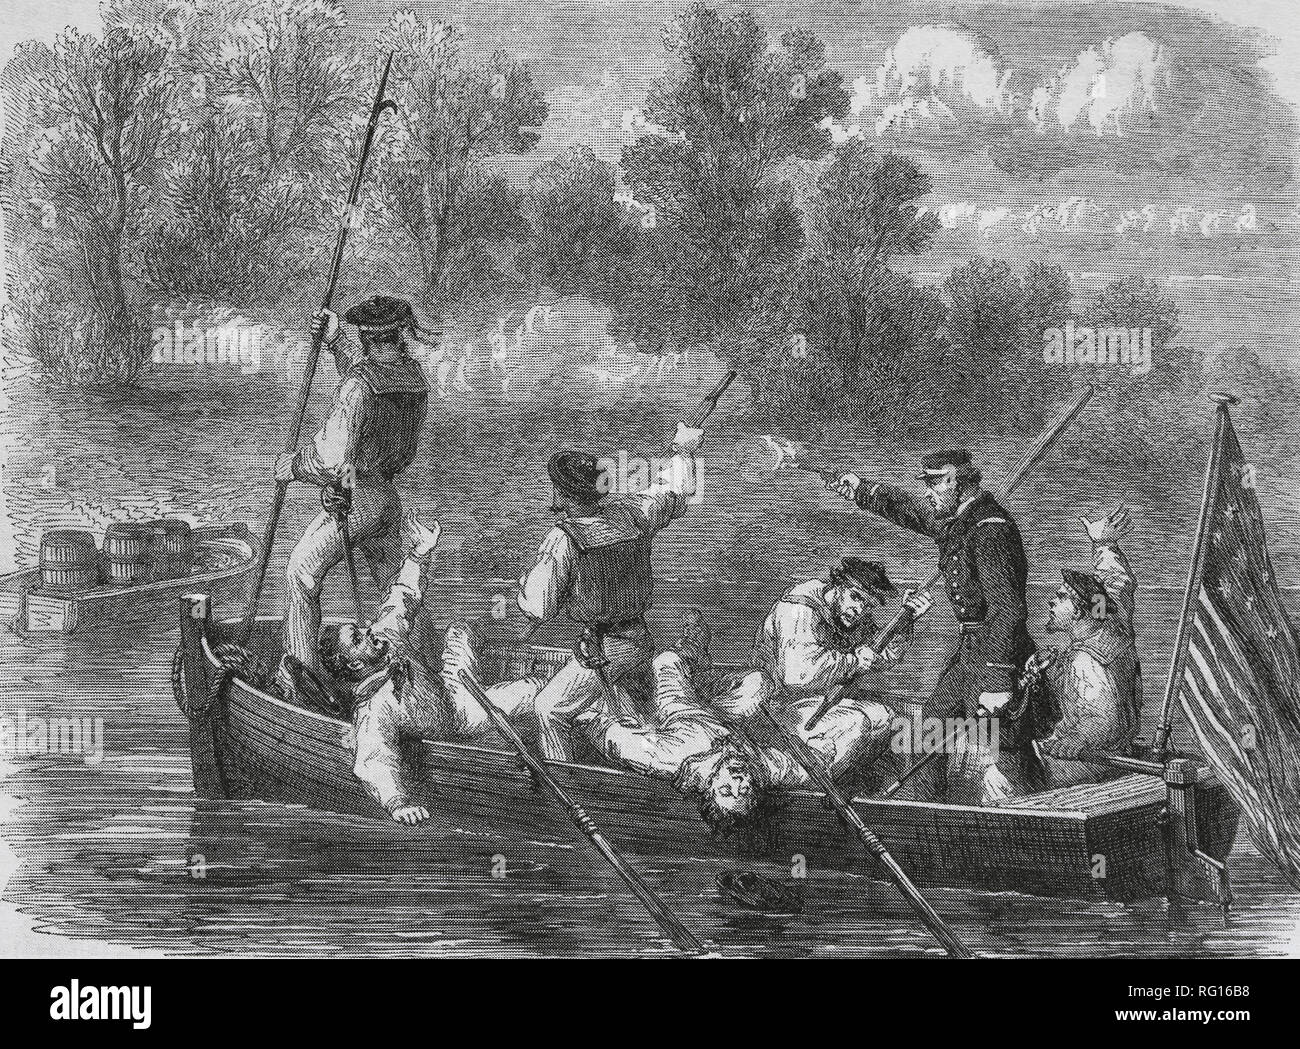 Amerikanischer Bürgerkrieg (1861-85). Eine Falle, die von Eidgenossen. Kapitän der Union Armee und Crew auf einem kleinen Boot. Kupferstich von Fr. Vizetelly. Stockfoto